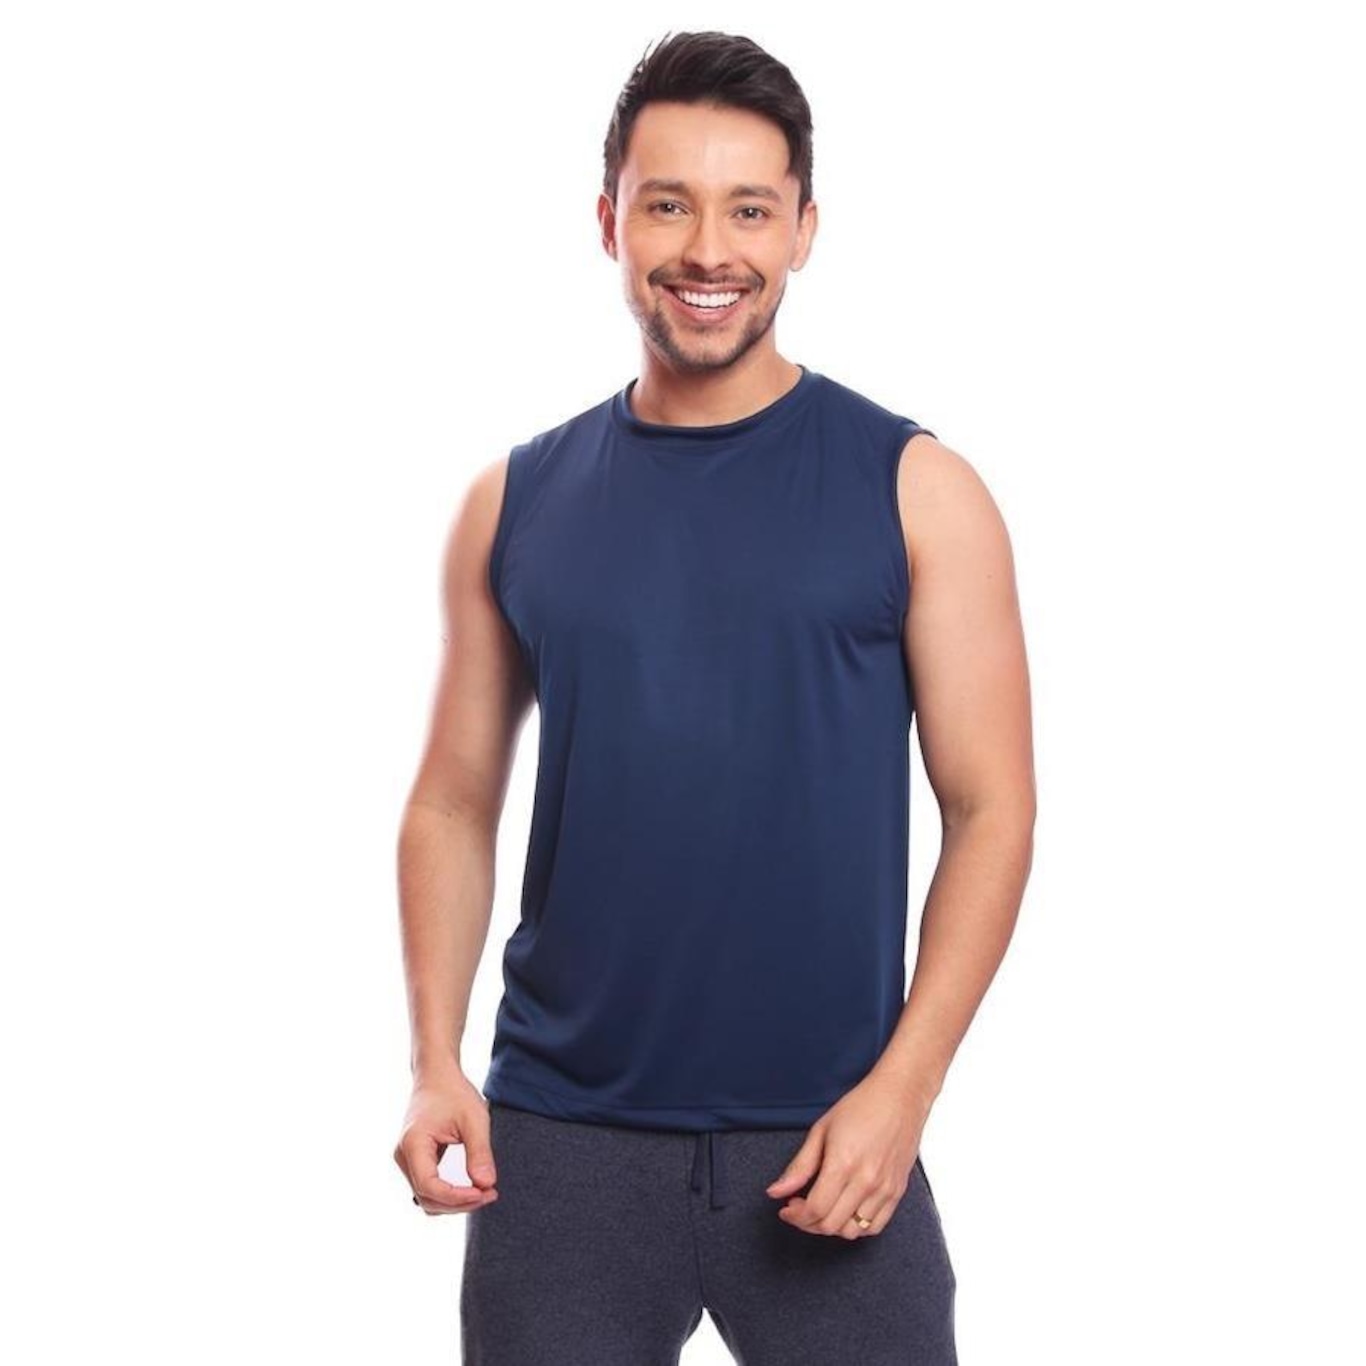 Kit 2 Camiseta Academia Masculina Dry Camisa Musculação Top  Gênero:Masculino;Cor:Azul;Tamanho:P